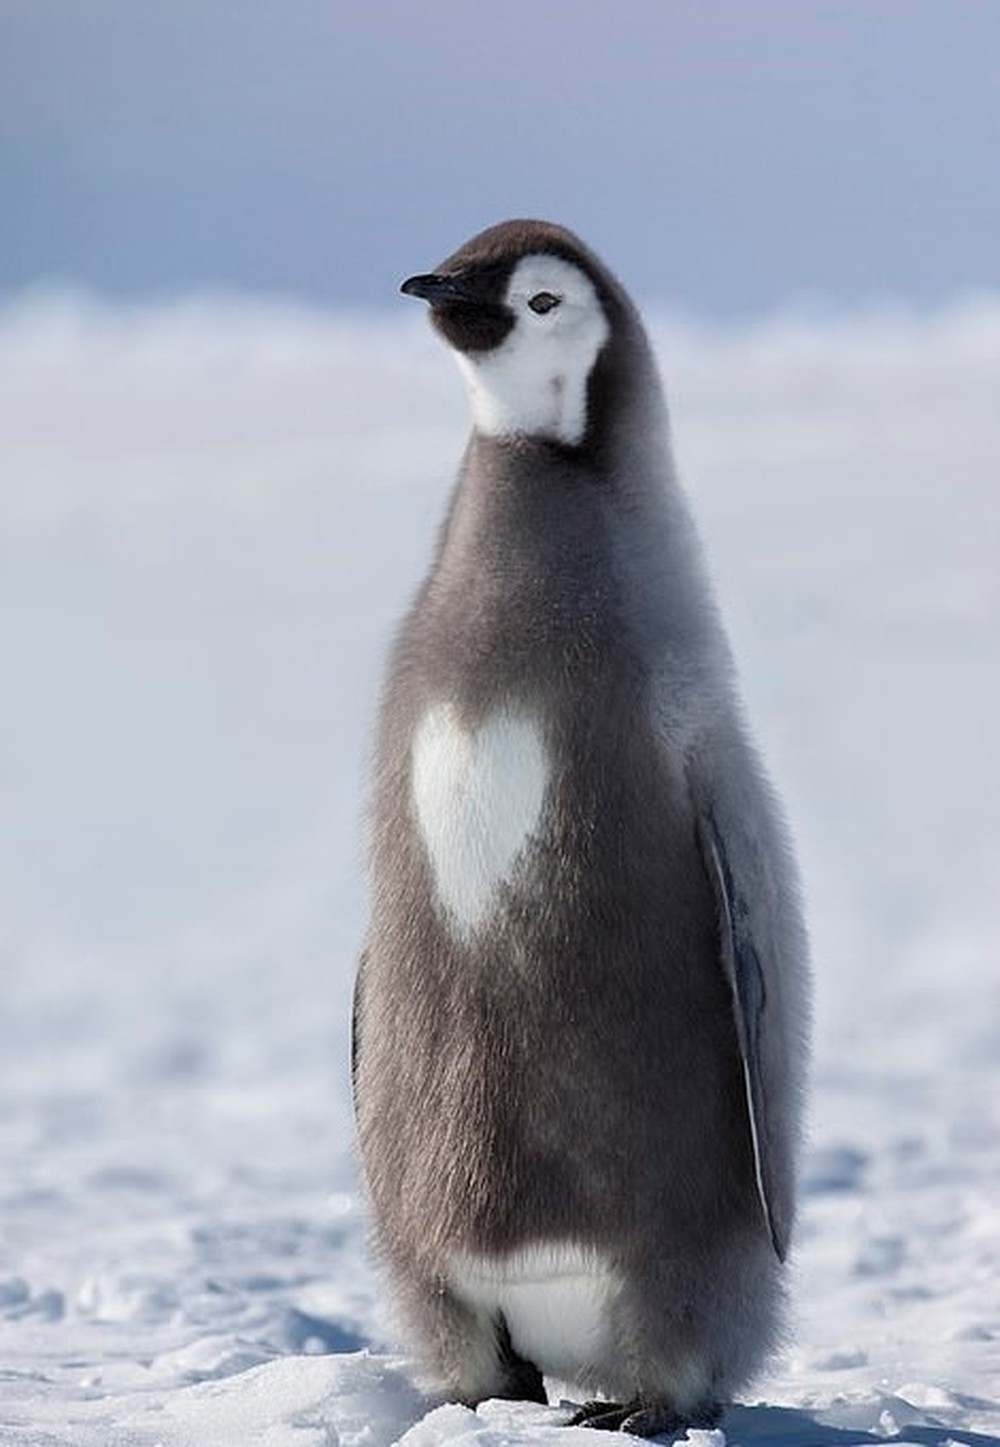 Một hình ảnh của một con chim cánh cụt đang nhìn vào một cái gì đó